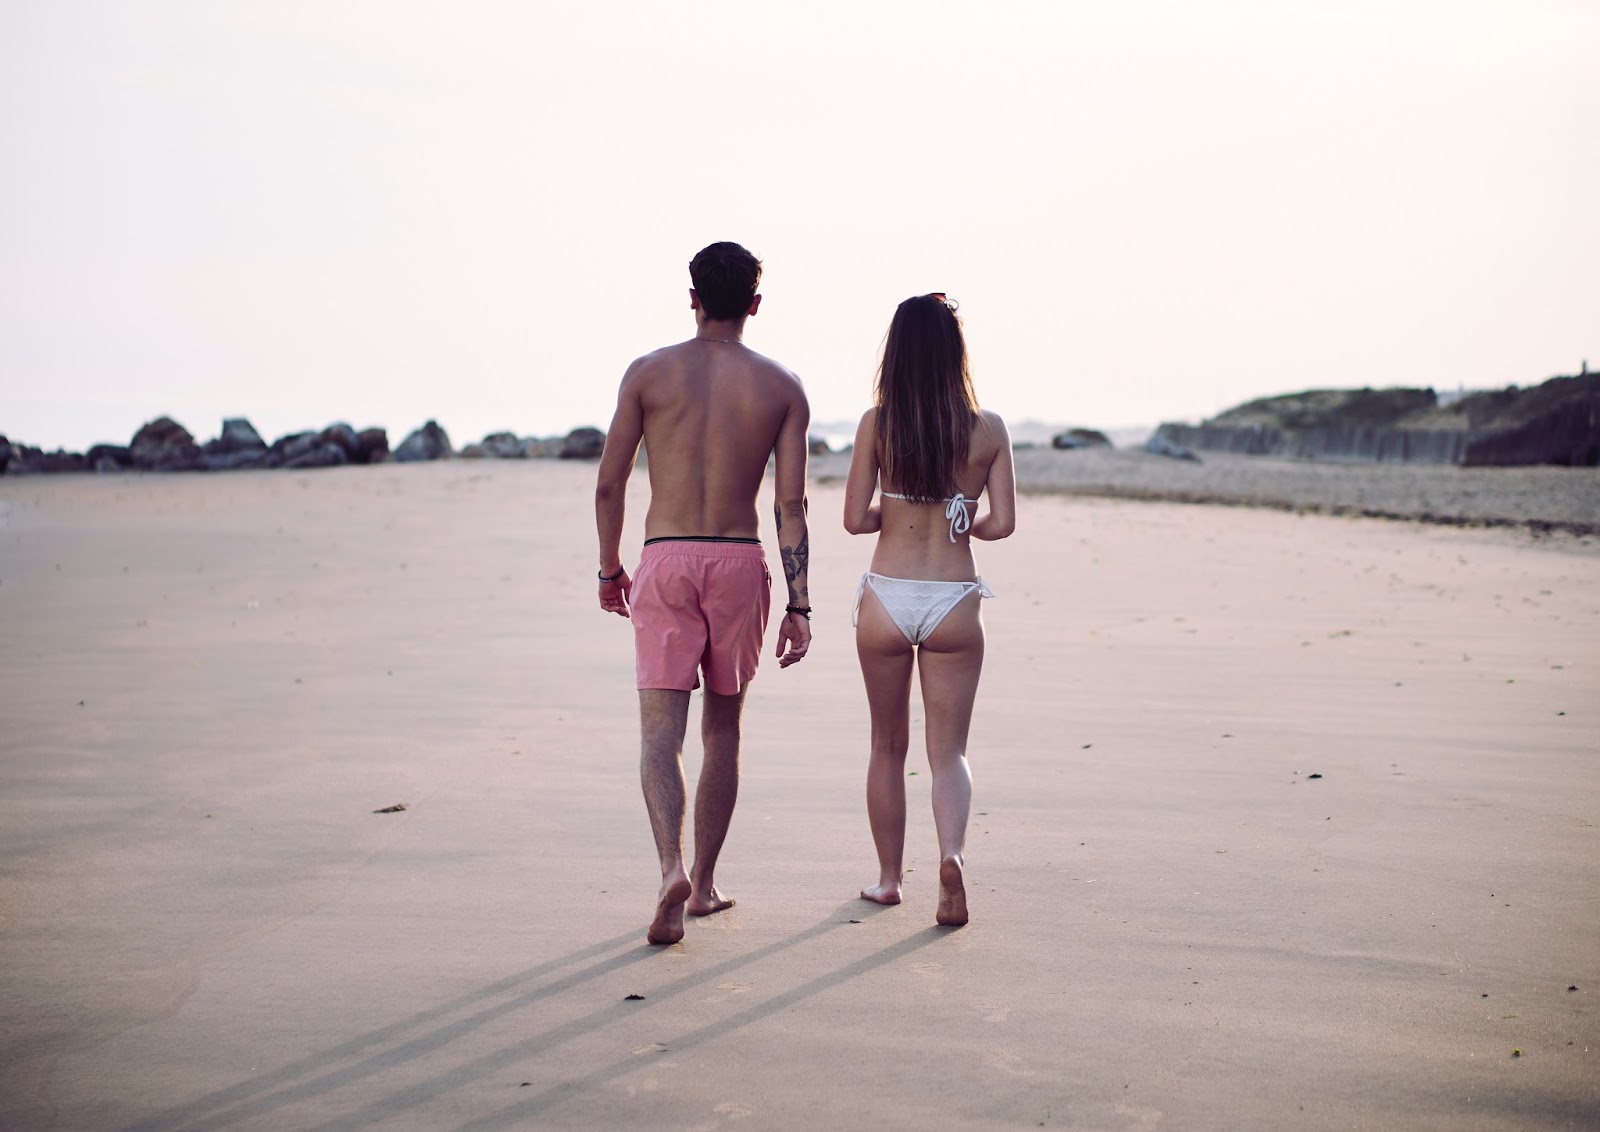 Man and woman walking down a beach